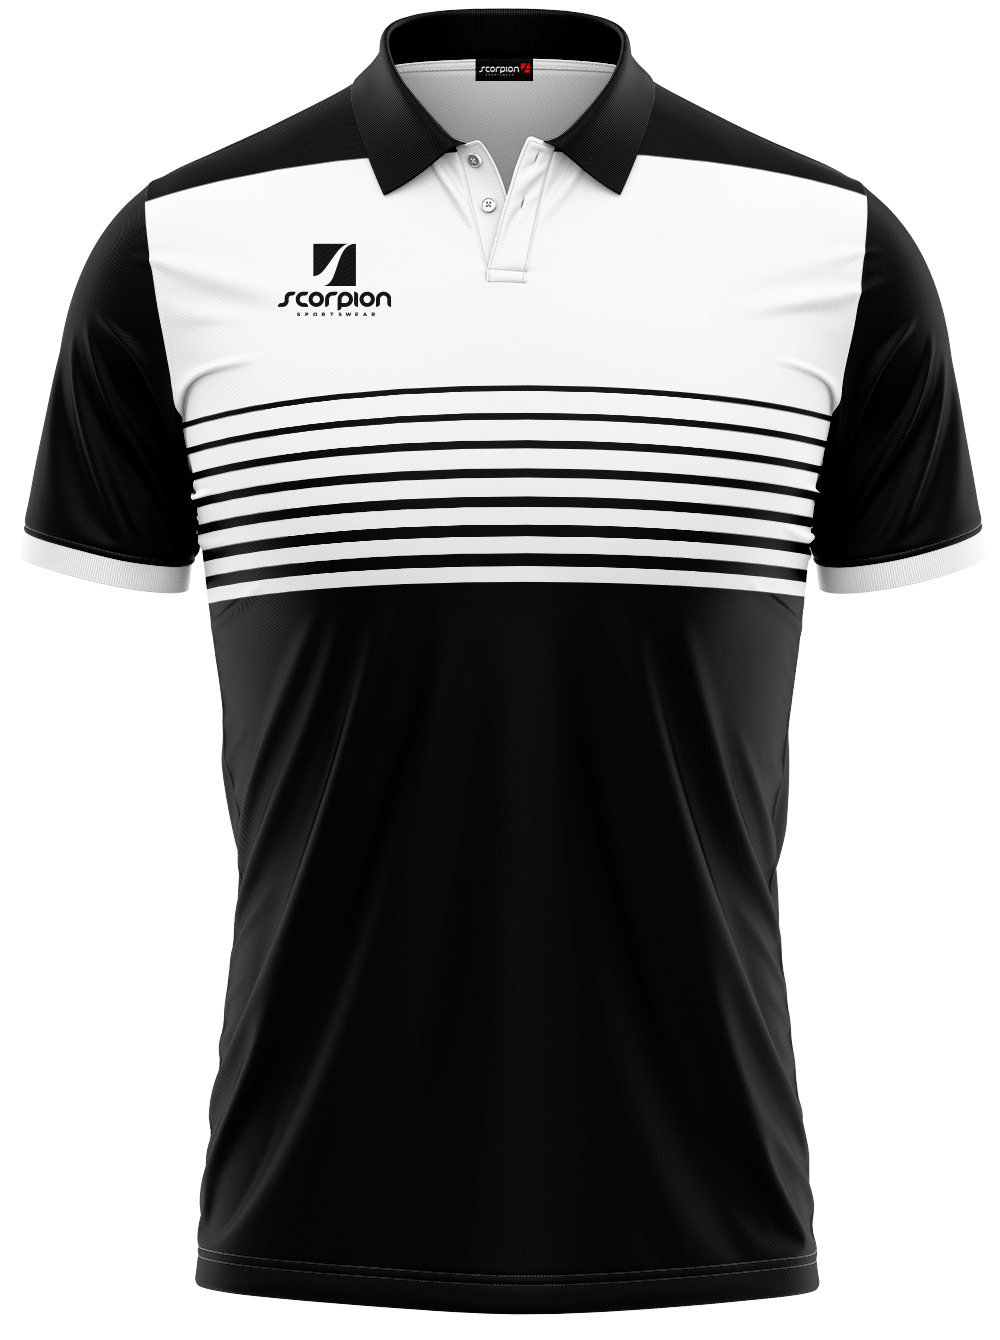 Scorpion Polo Shirts Pattern 1 - White/Black